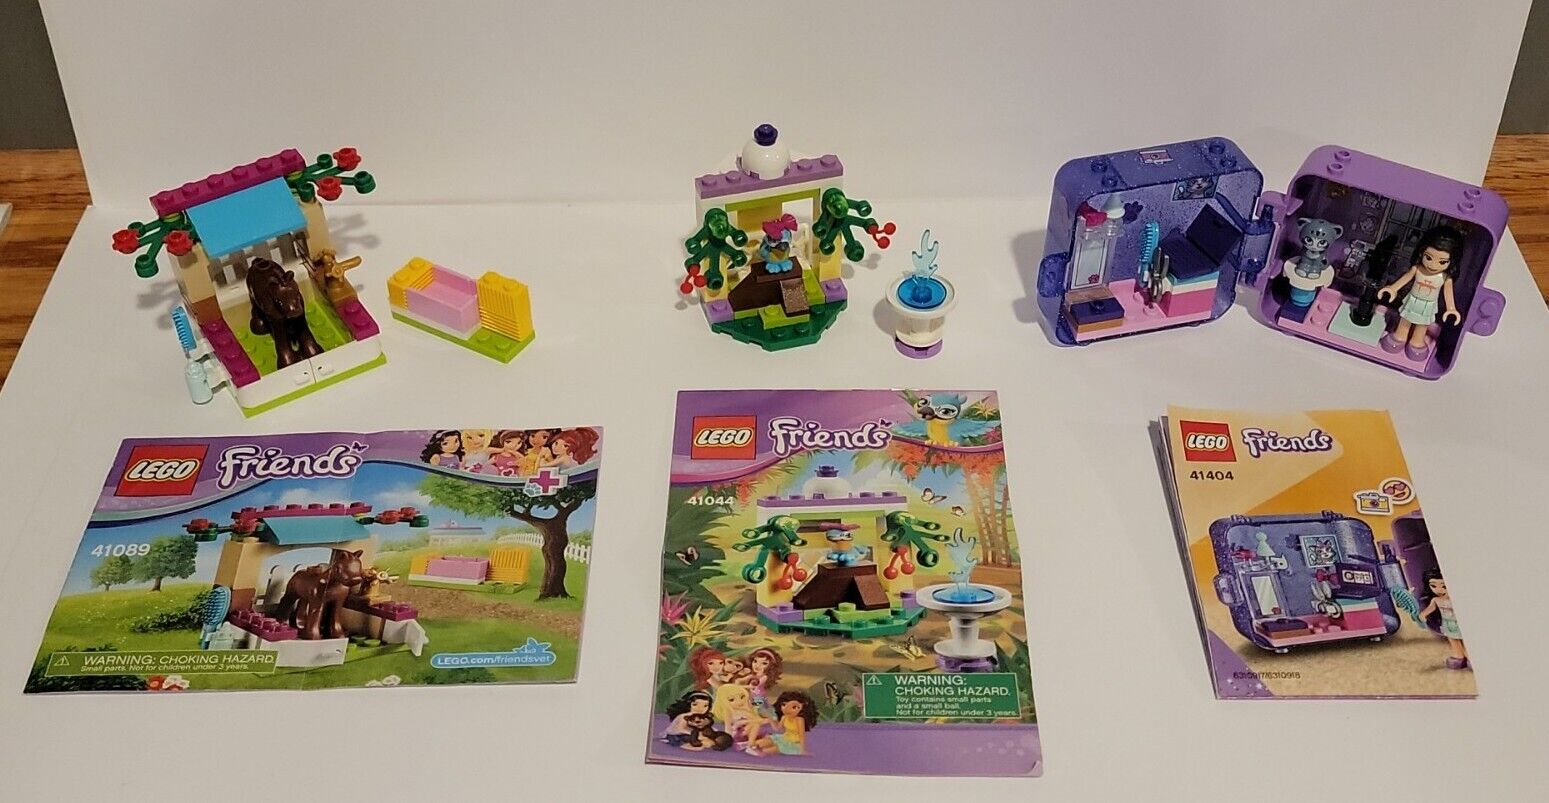 Lego Friends LOT: Little Foal (41089), Macaw's Fountain (41044) & Emma (41404)